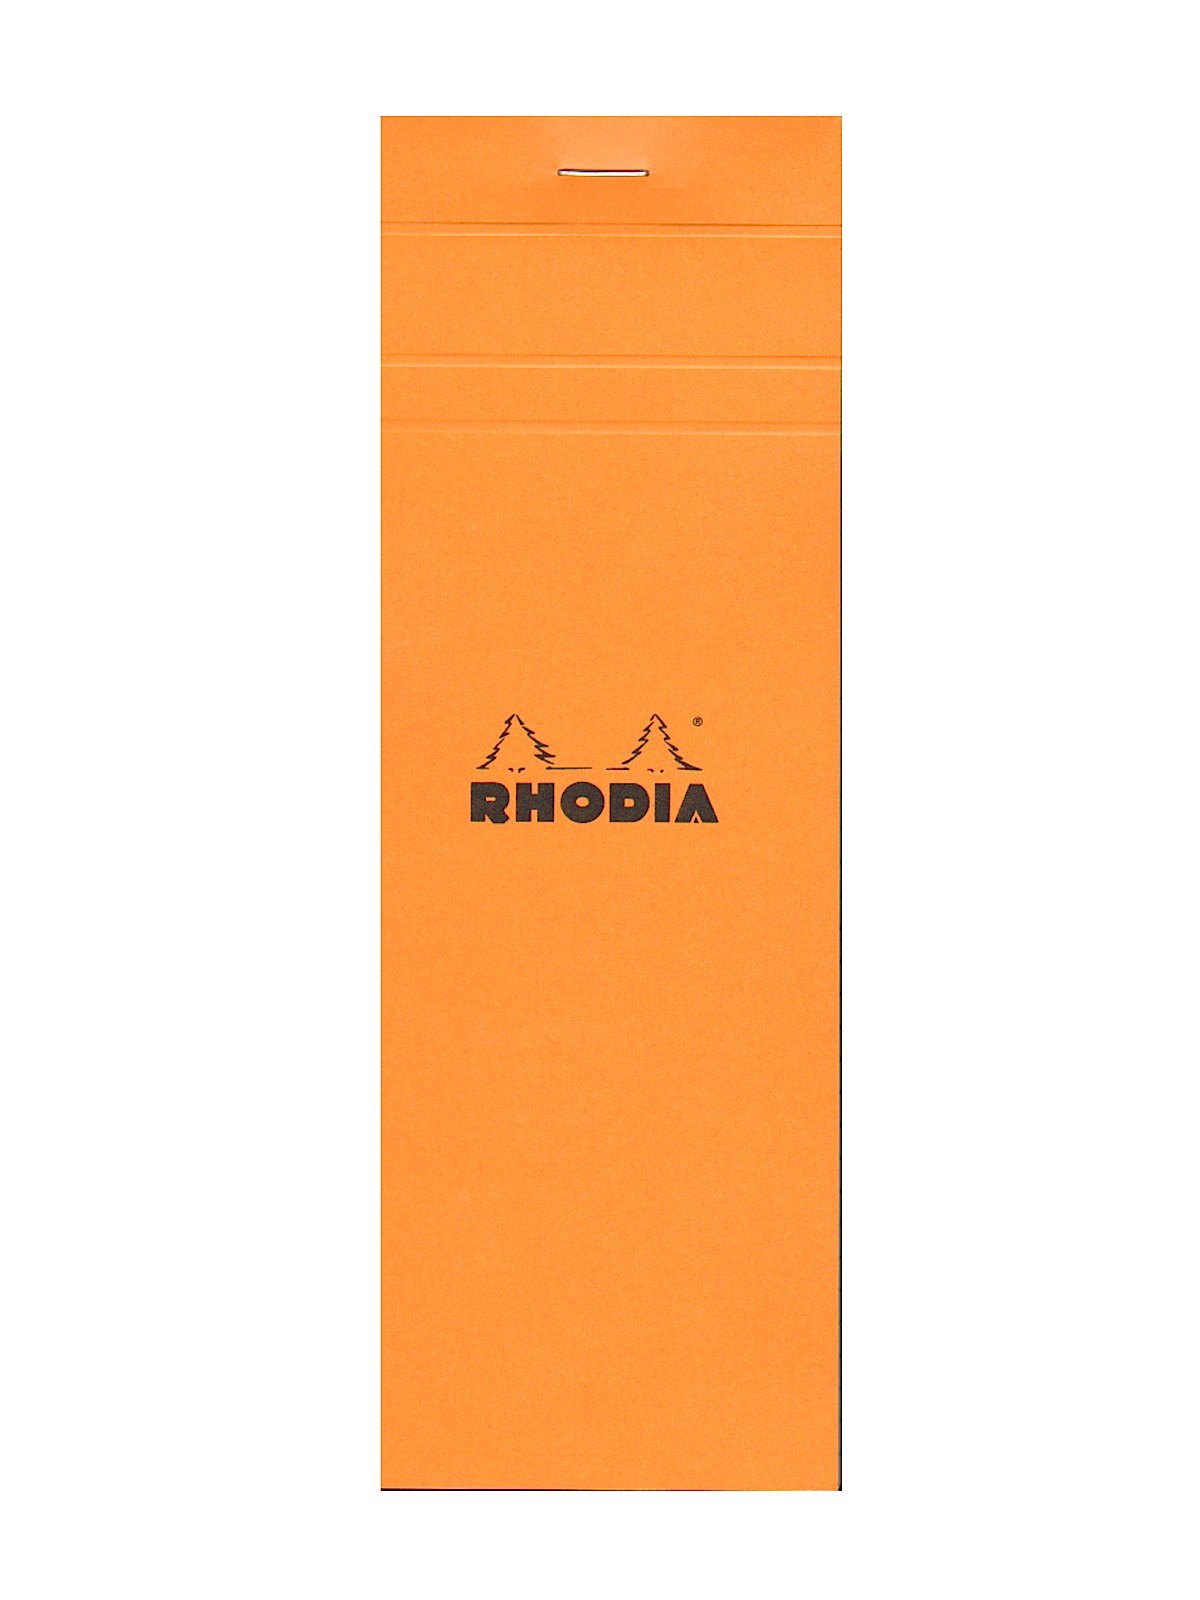 Rhodia Pad - No. 12 (3.3 x 4.7) - Graph - Orange